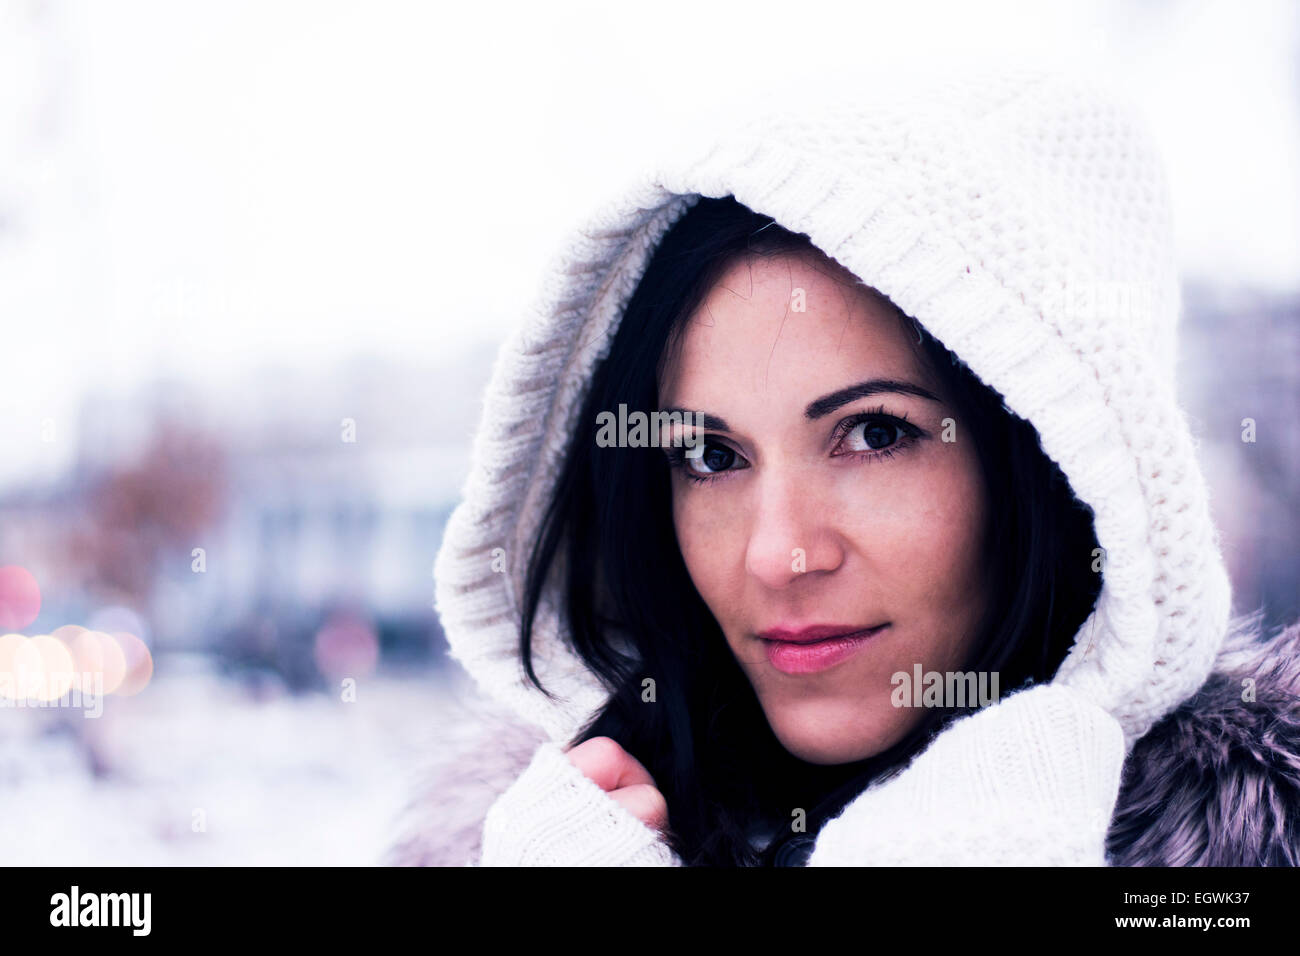 Pretty woman looking wearing the knitwear hood Stock Photo